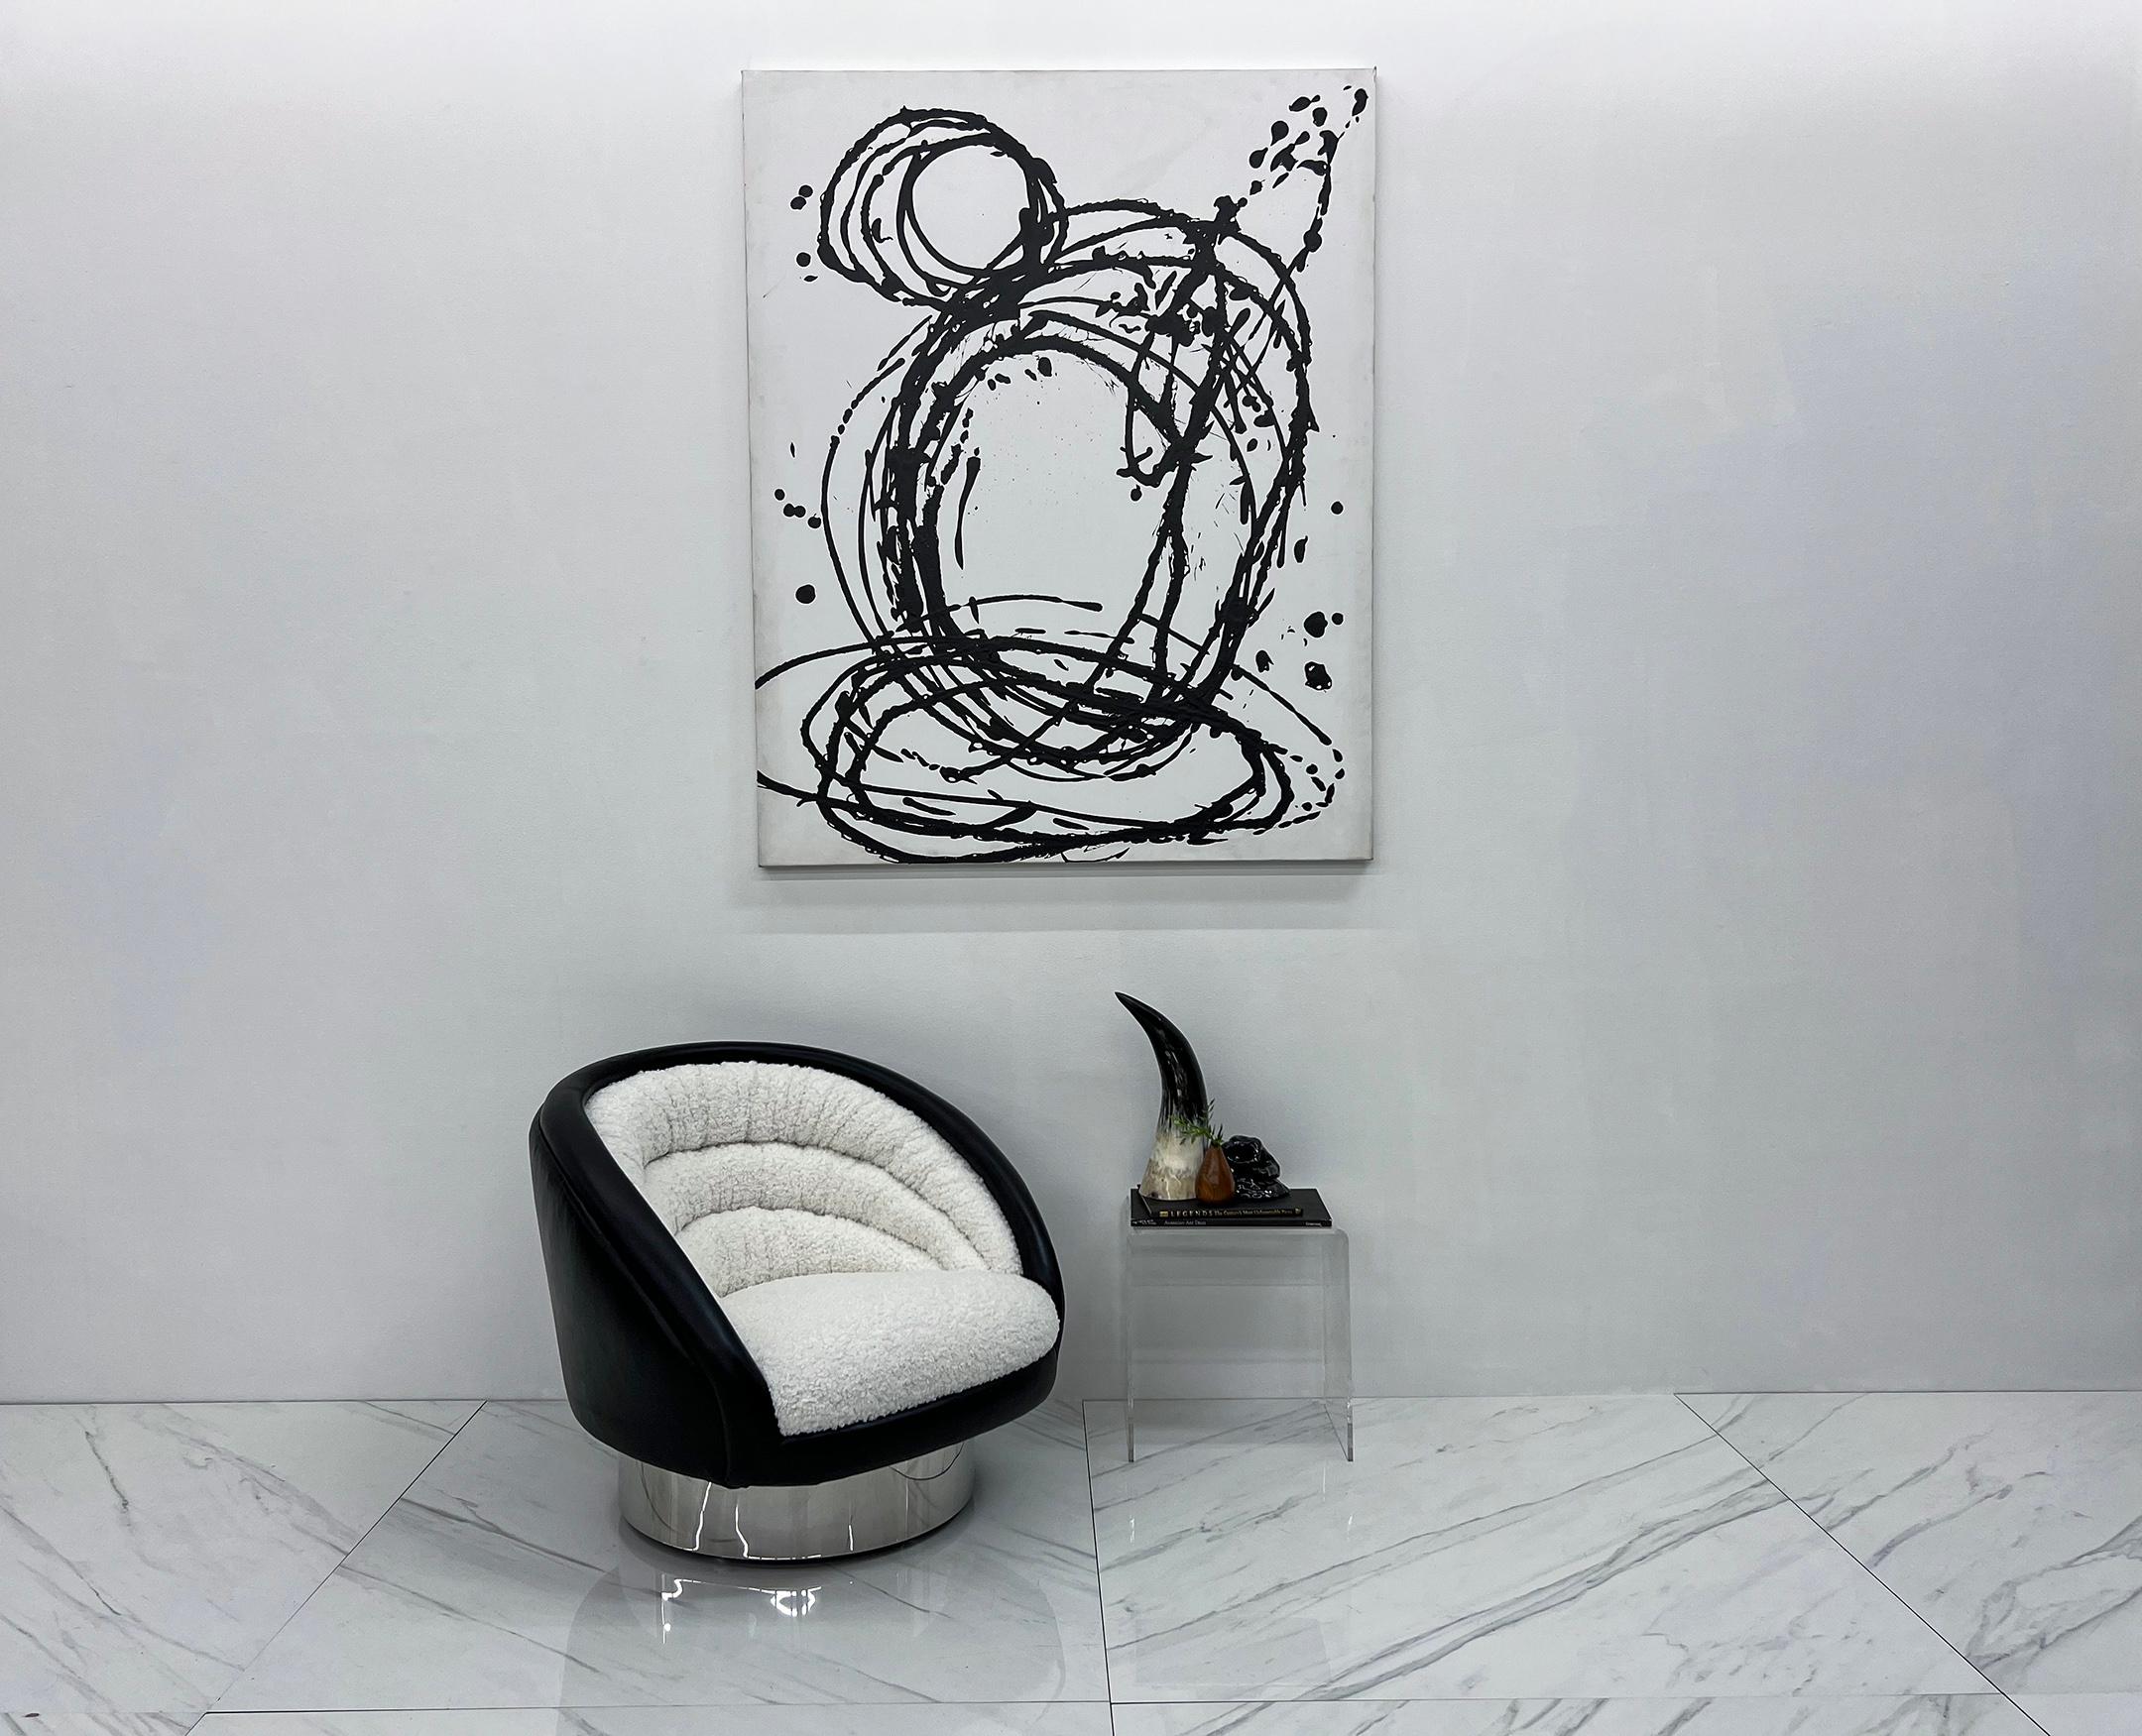 Dieser Stuhl ist unglaublich. Dieser halbmondförmige Stuhl wurde von Vladimir Kagan für Vladimir Kagan Designs entworfen und ist so luxuriös und schön, wie er nur sein kann. Komplett überarbeitet und gepolstert mit einem dicken, hochflorigen,